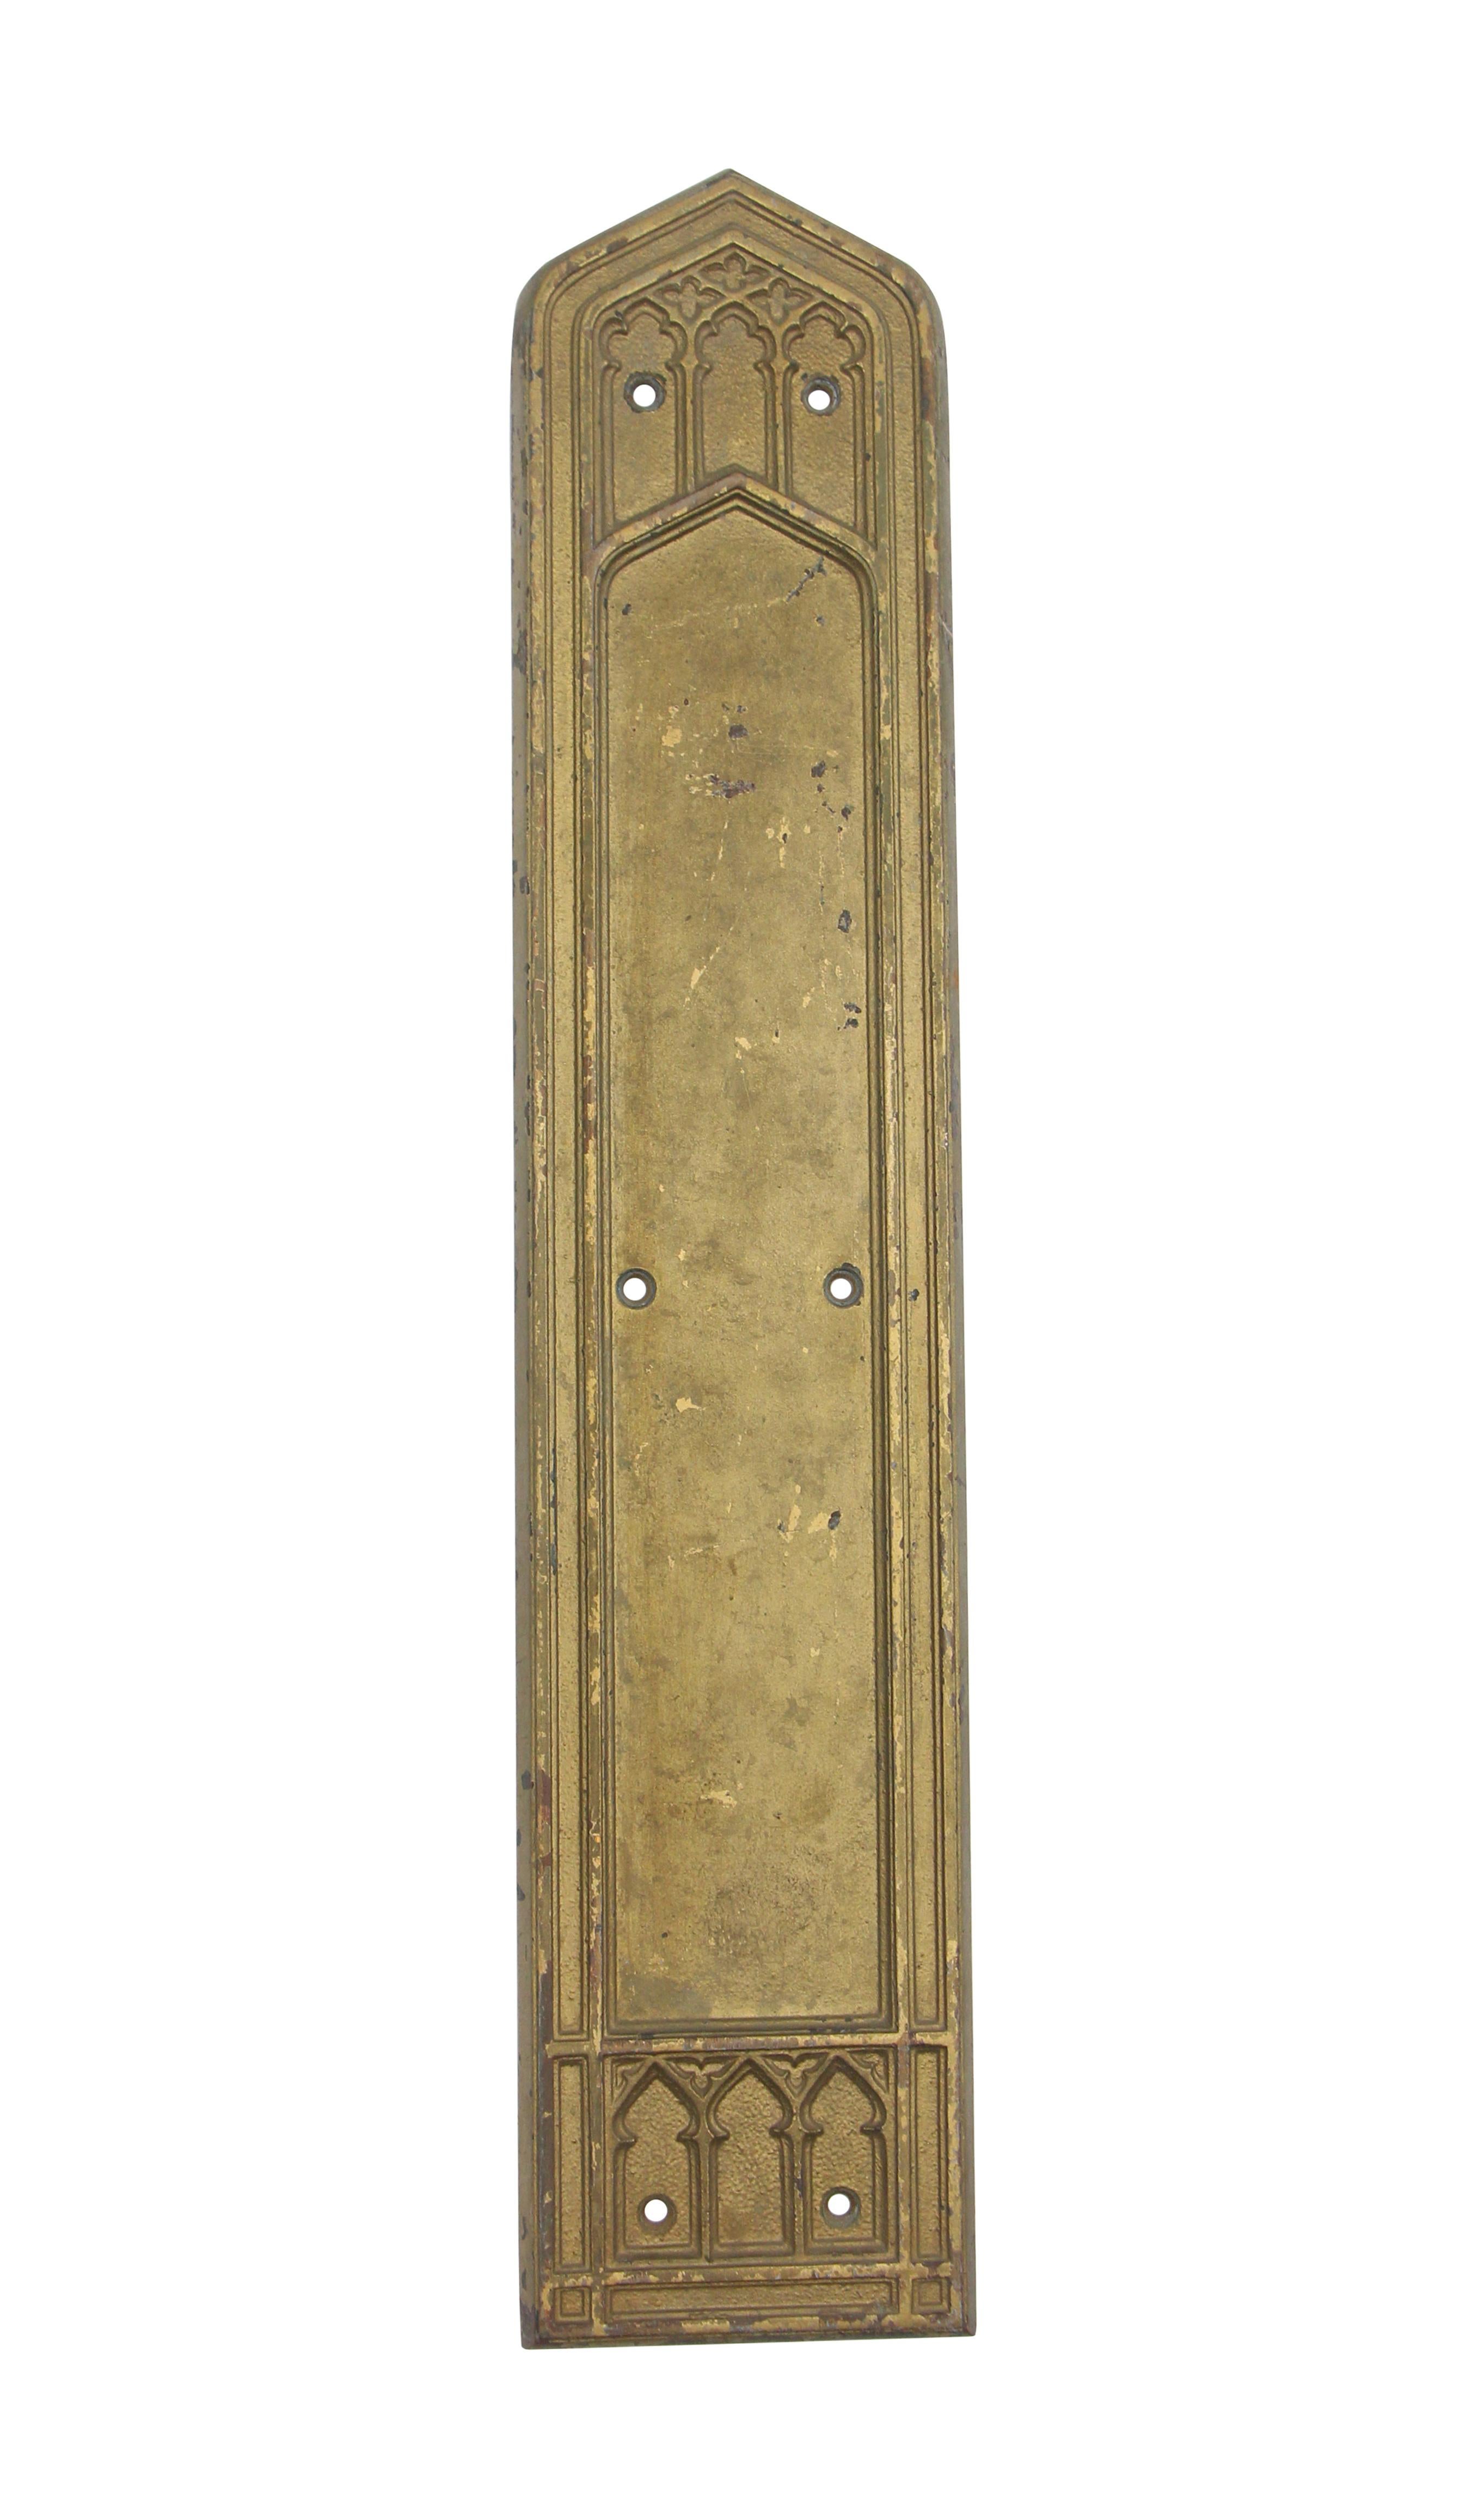 Plaque de poussée en bronze massif du début du XXe siècle, conçue dans un style grand gothique. Livré avec la peinture dorée d'origine. Fabriqué par Corbin, l'un des premiers fabricants de quincaillerie aux États-Unis.